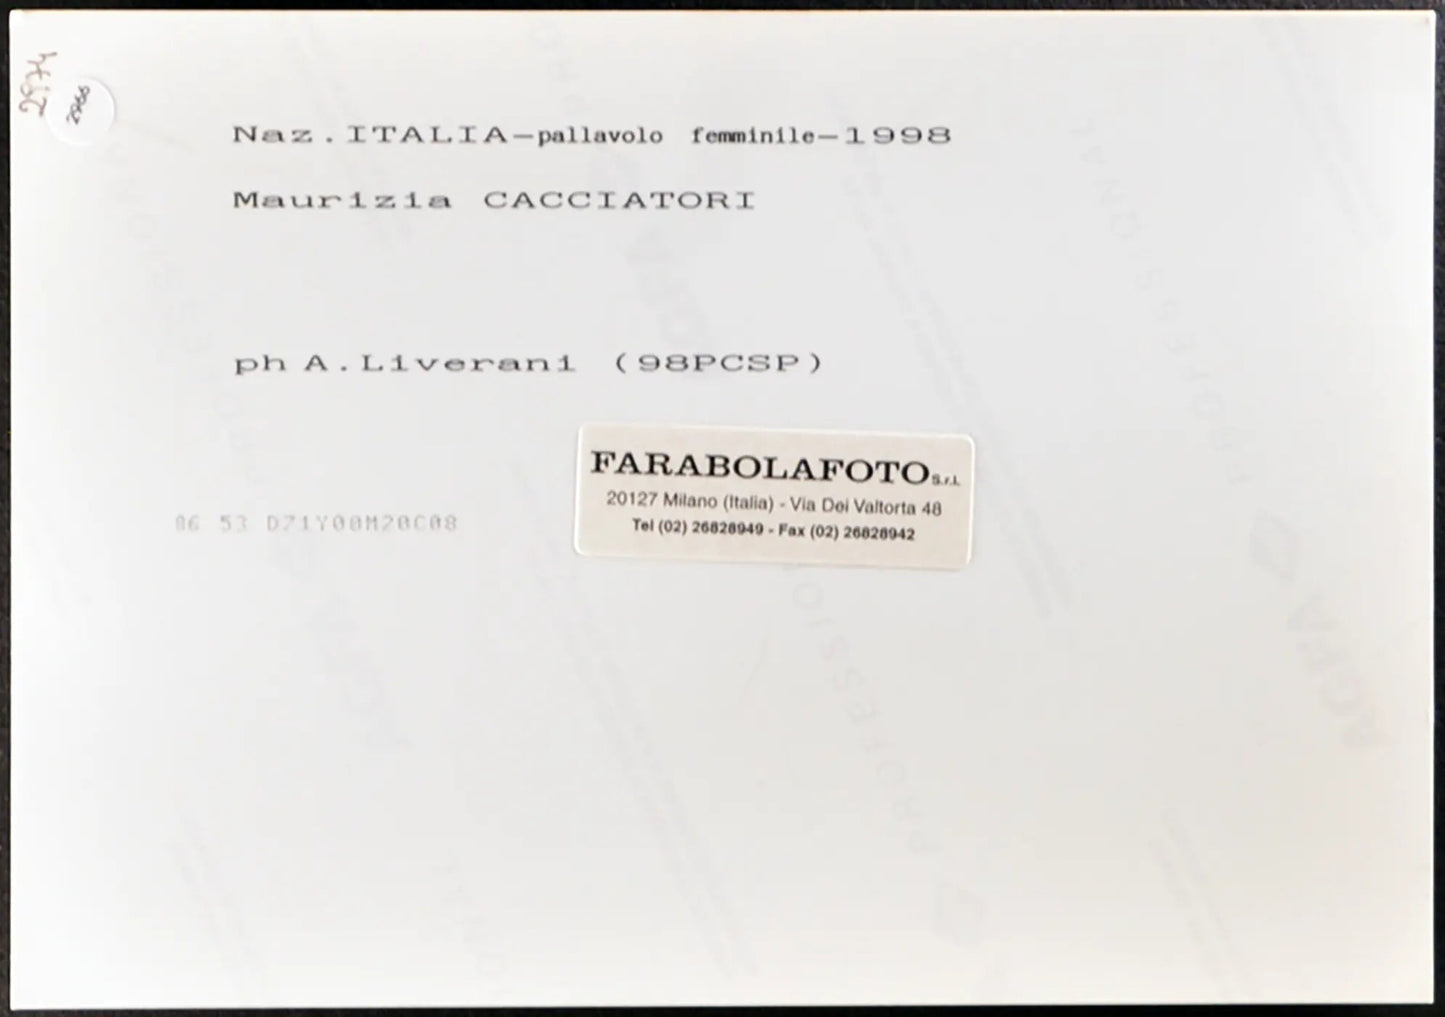 Cacciatori Nazionale Pallavolo 1998 Ft 2966 - Stampa 20x15 cm - Farabola Stampa ai sali d'argento